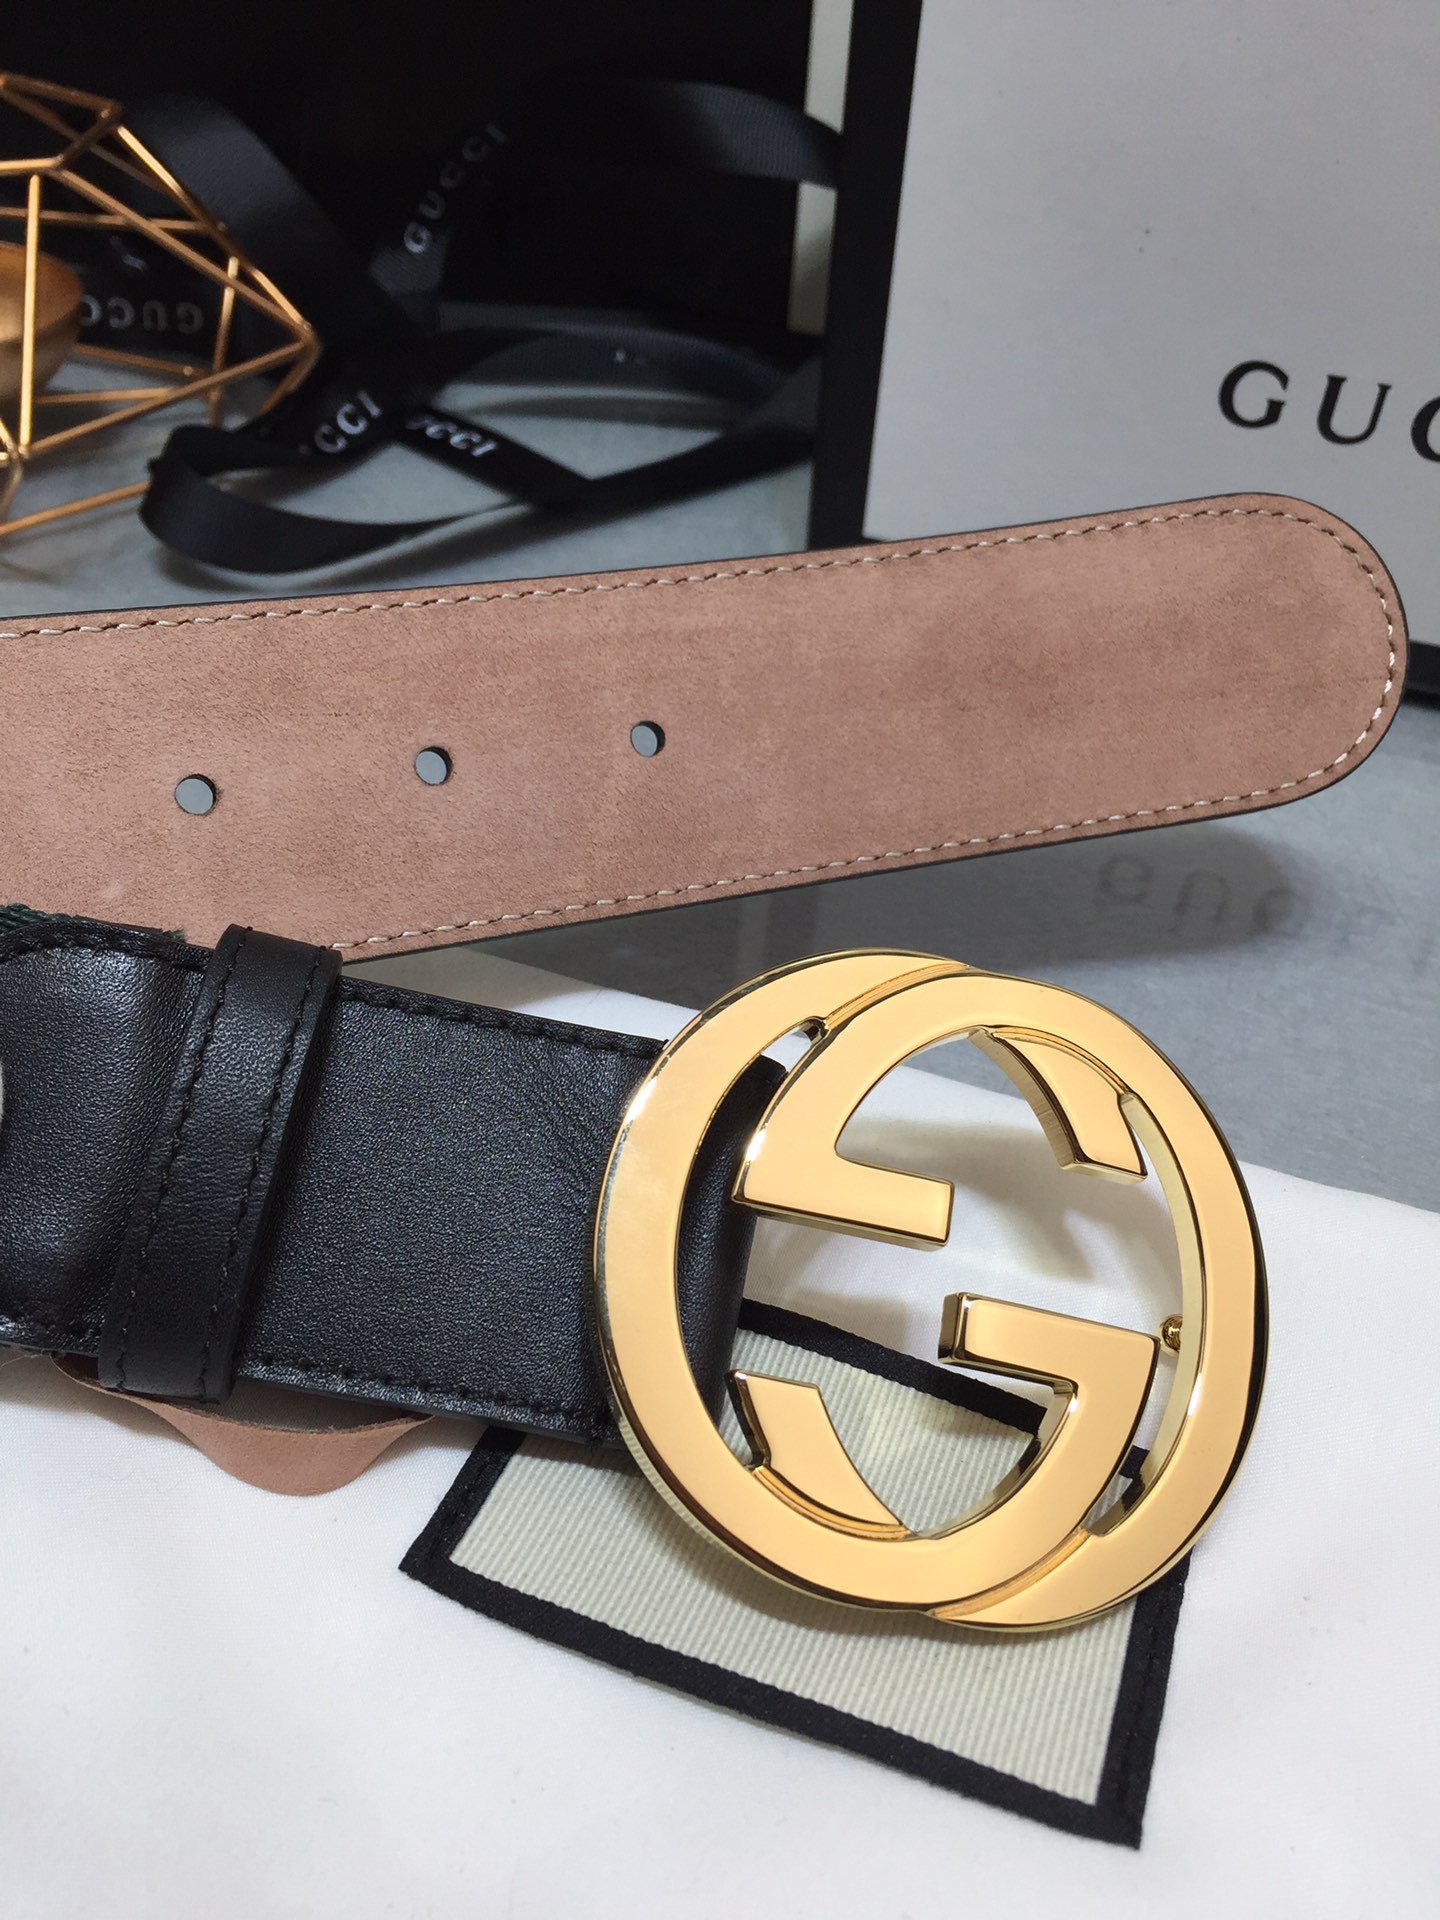 Gucci Belt in Stripe